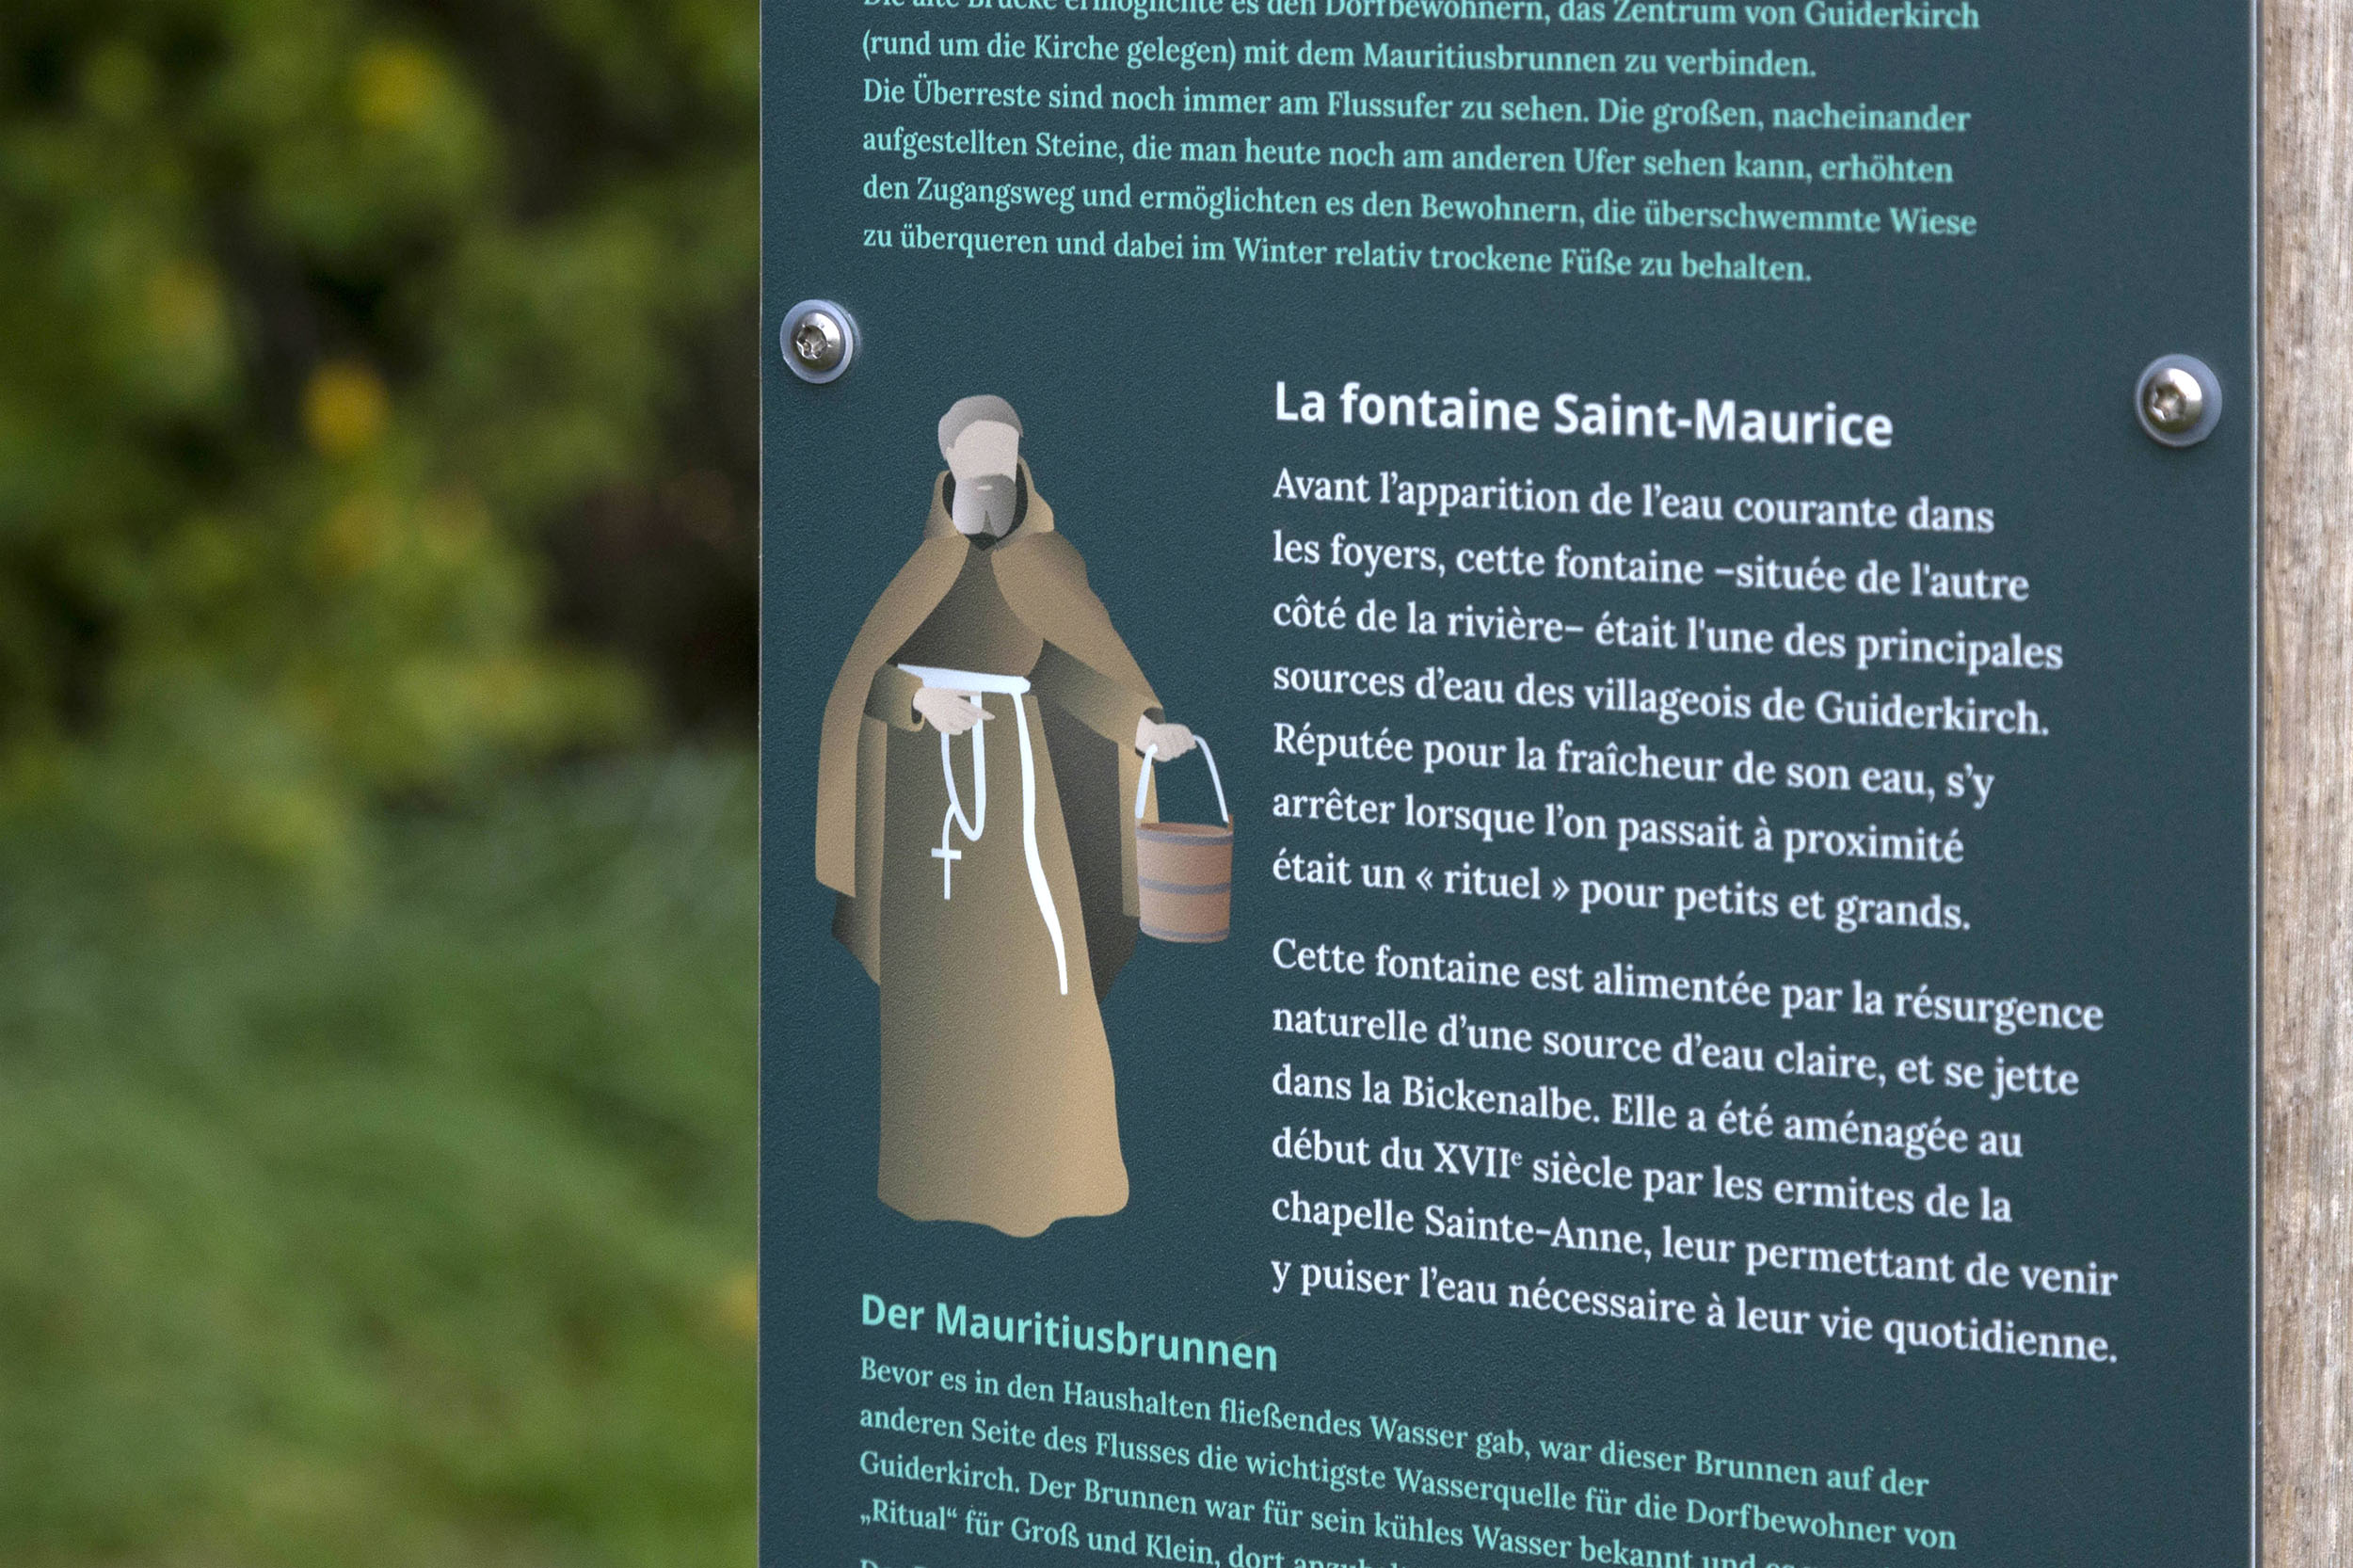 Zoom sur une illustration de moine tenant un seau, pour aller chercher de l’eau à la fontaine Saint-Maurice.